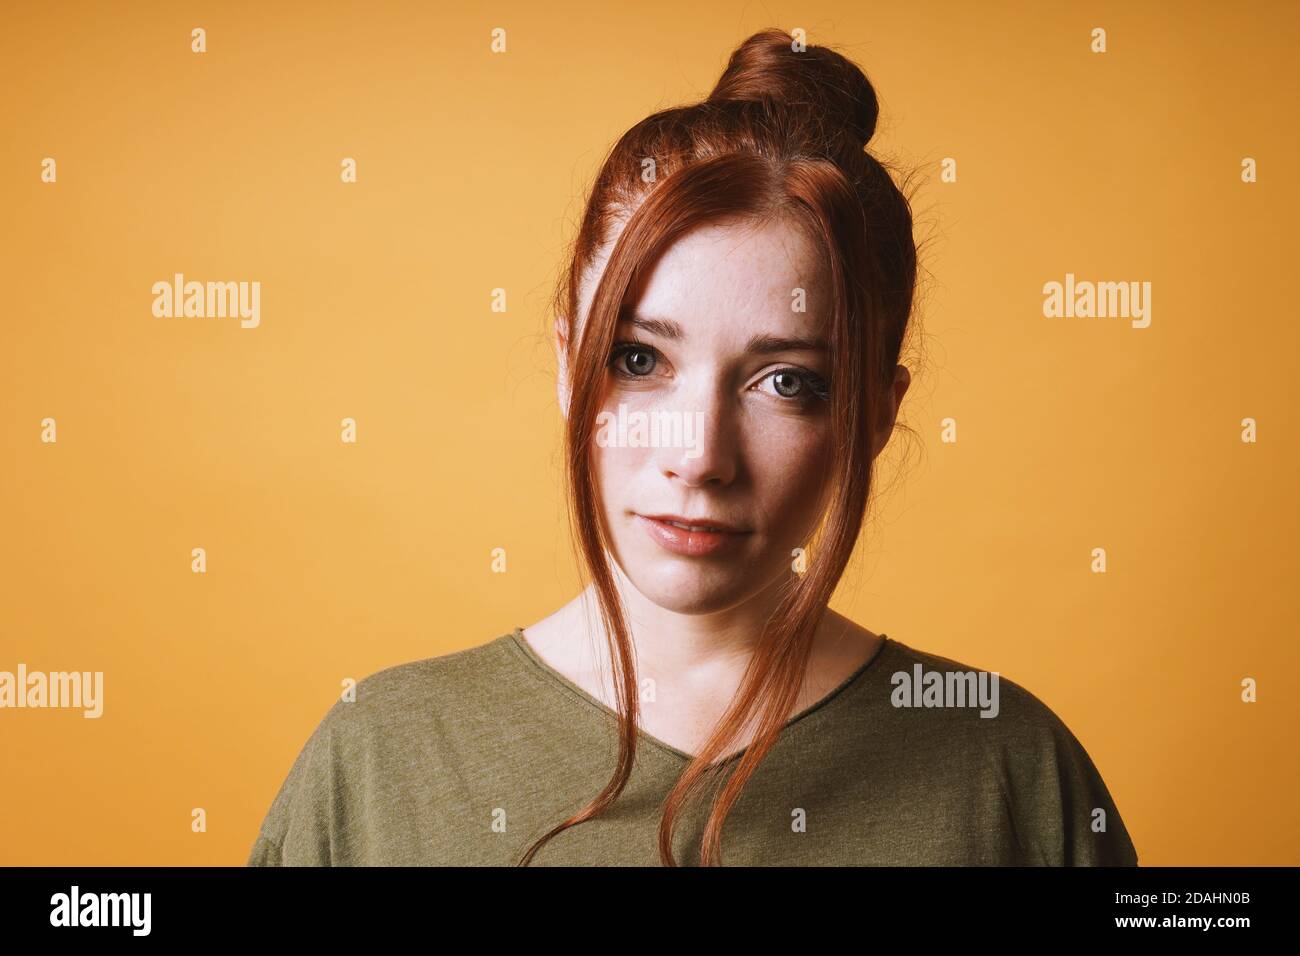 fresco giovane donna con capelli rossi sudicio pettinatura e trefoli sciolti sulla parte anteriore contro sfondo giallo arancione con spazio di opy Foto Stock